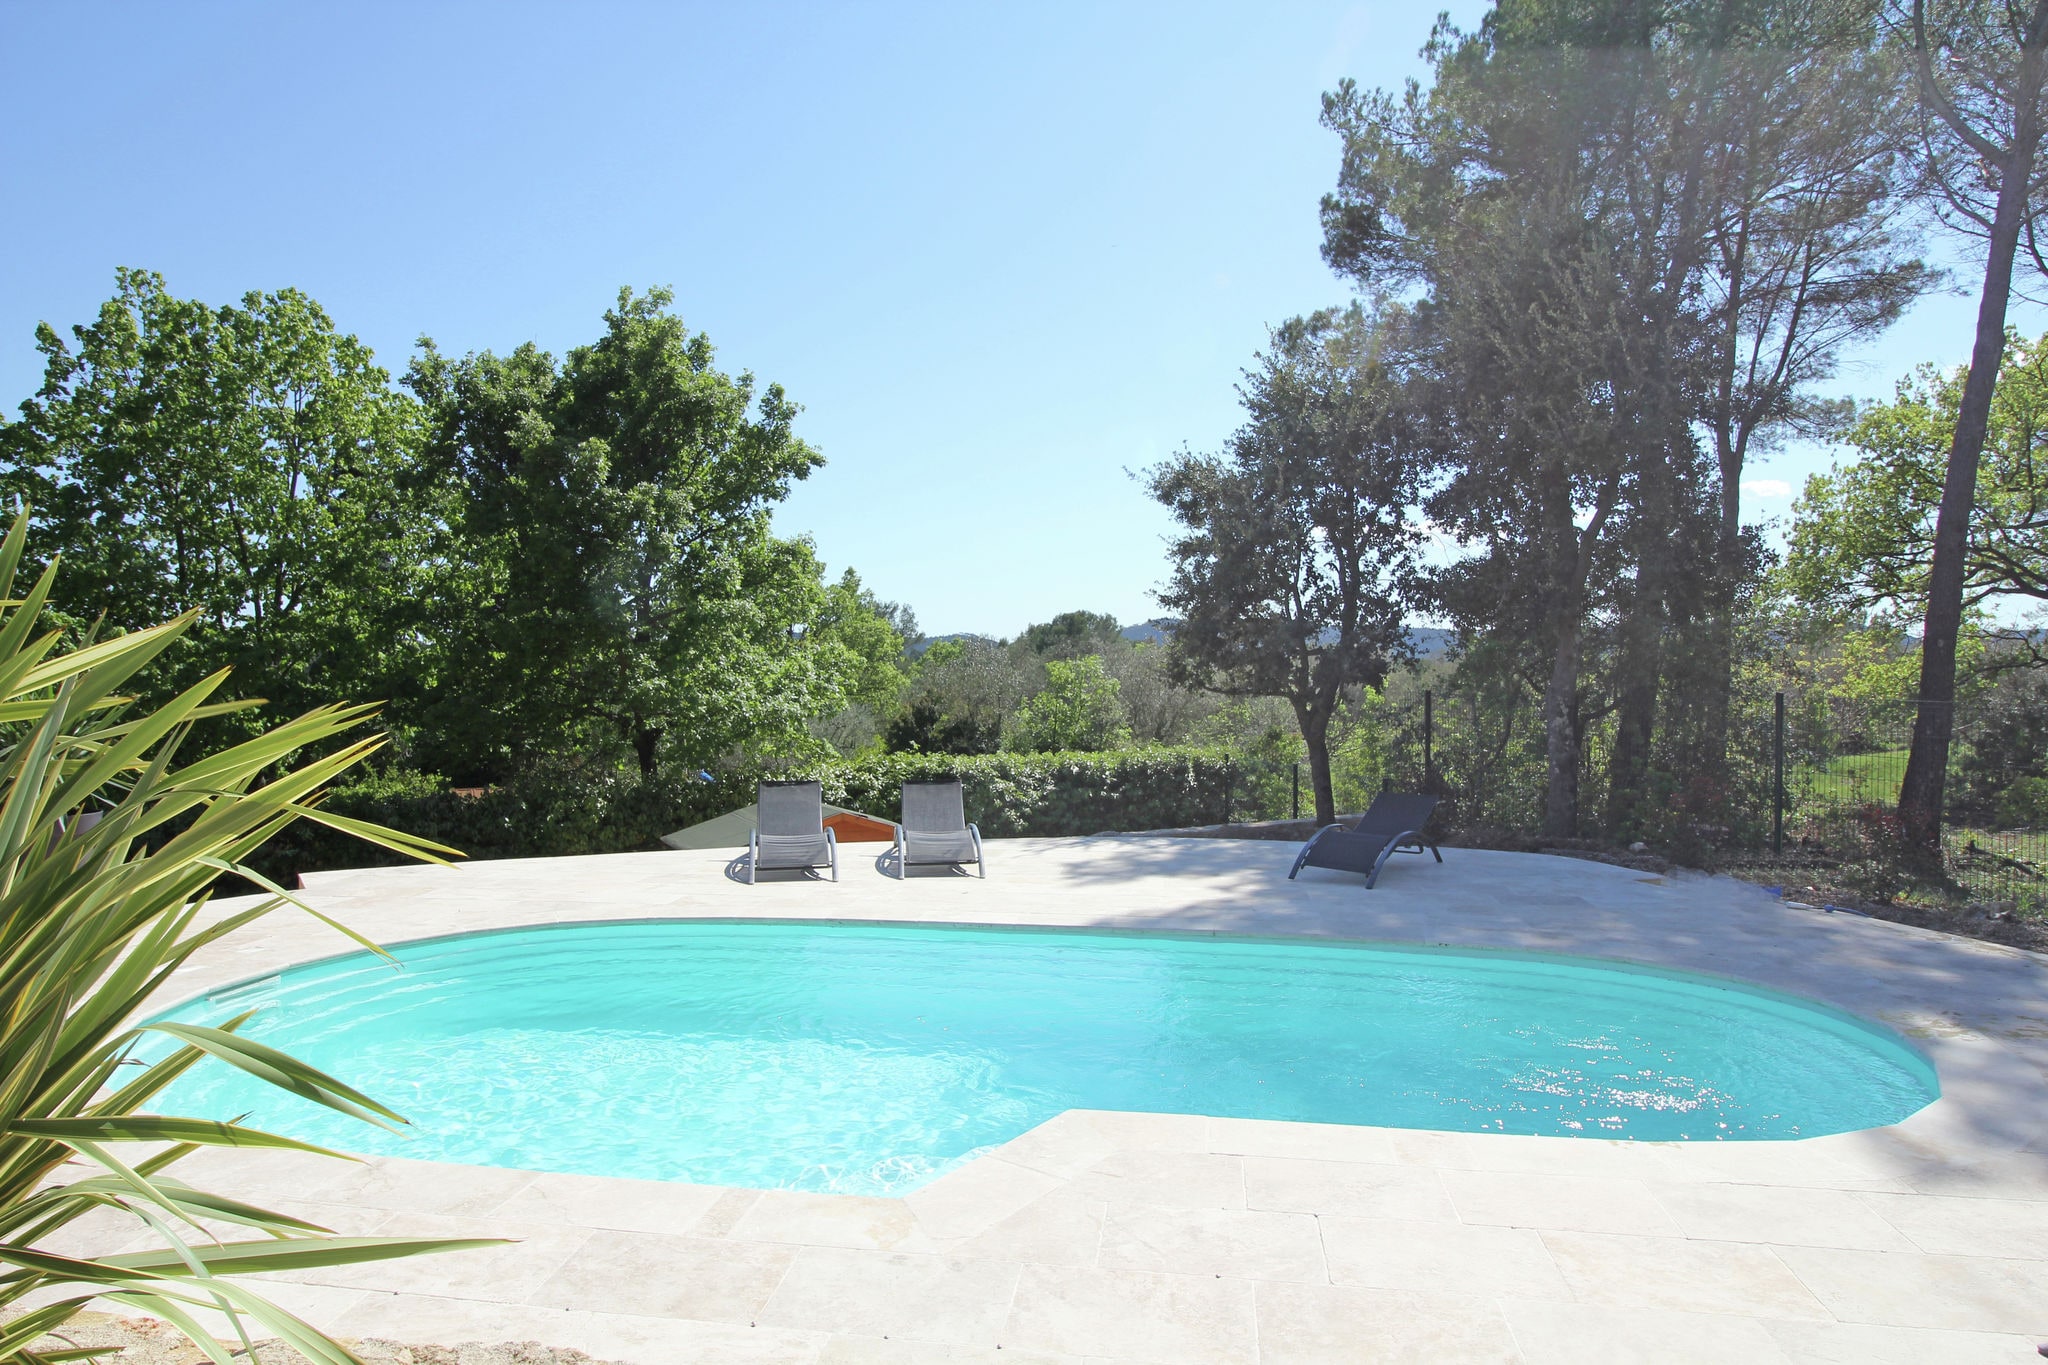 Ruime, luxe villa met privézwembad en biljart ruimte, nabij idyllisch dorpje